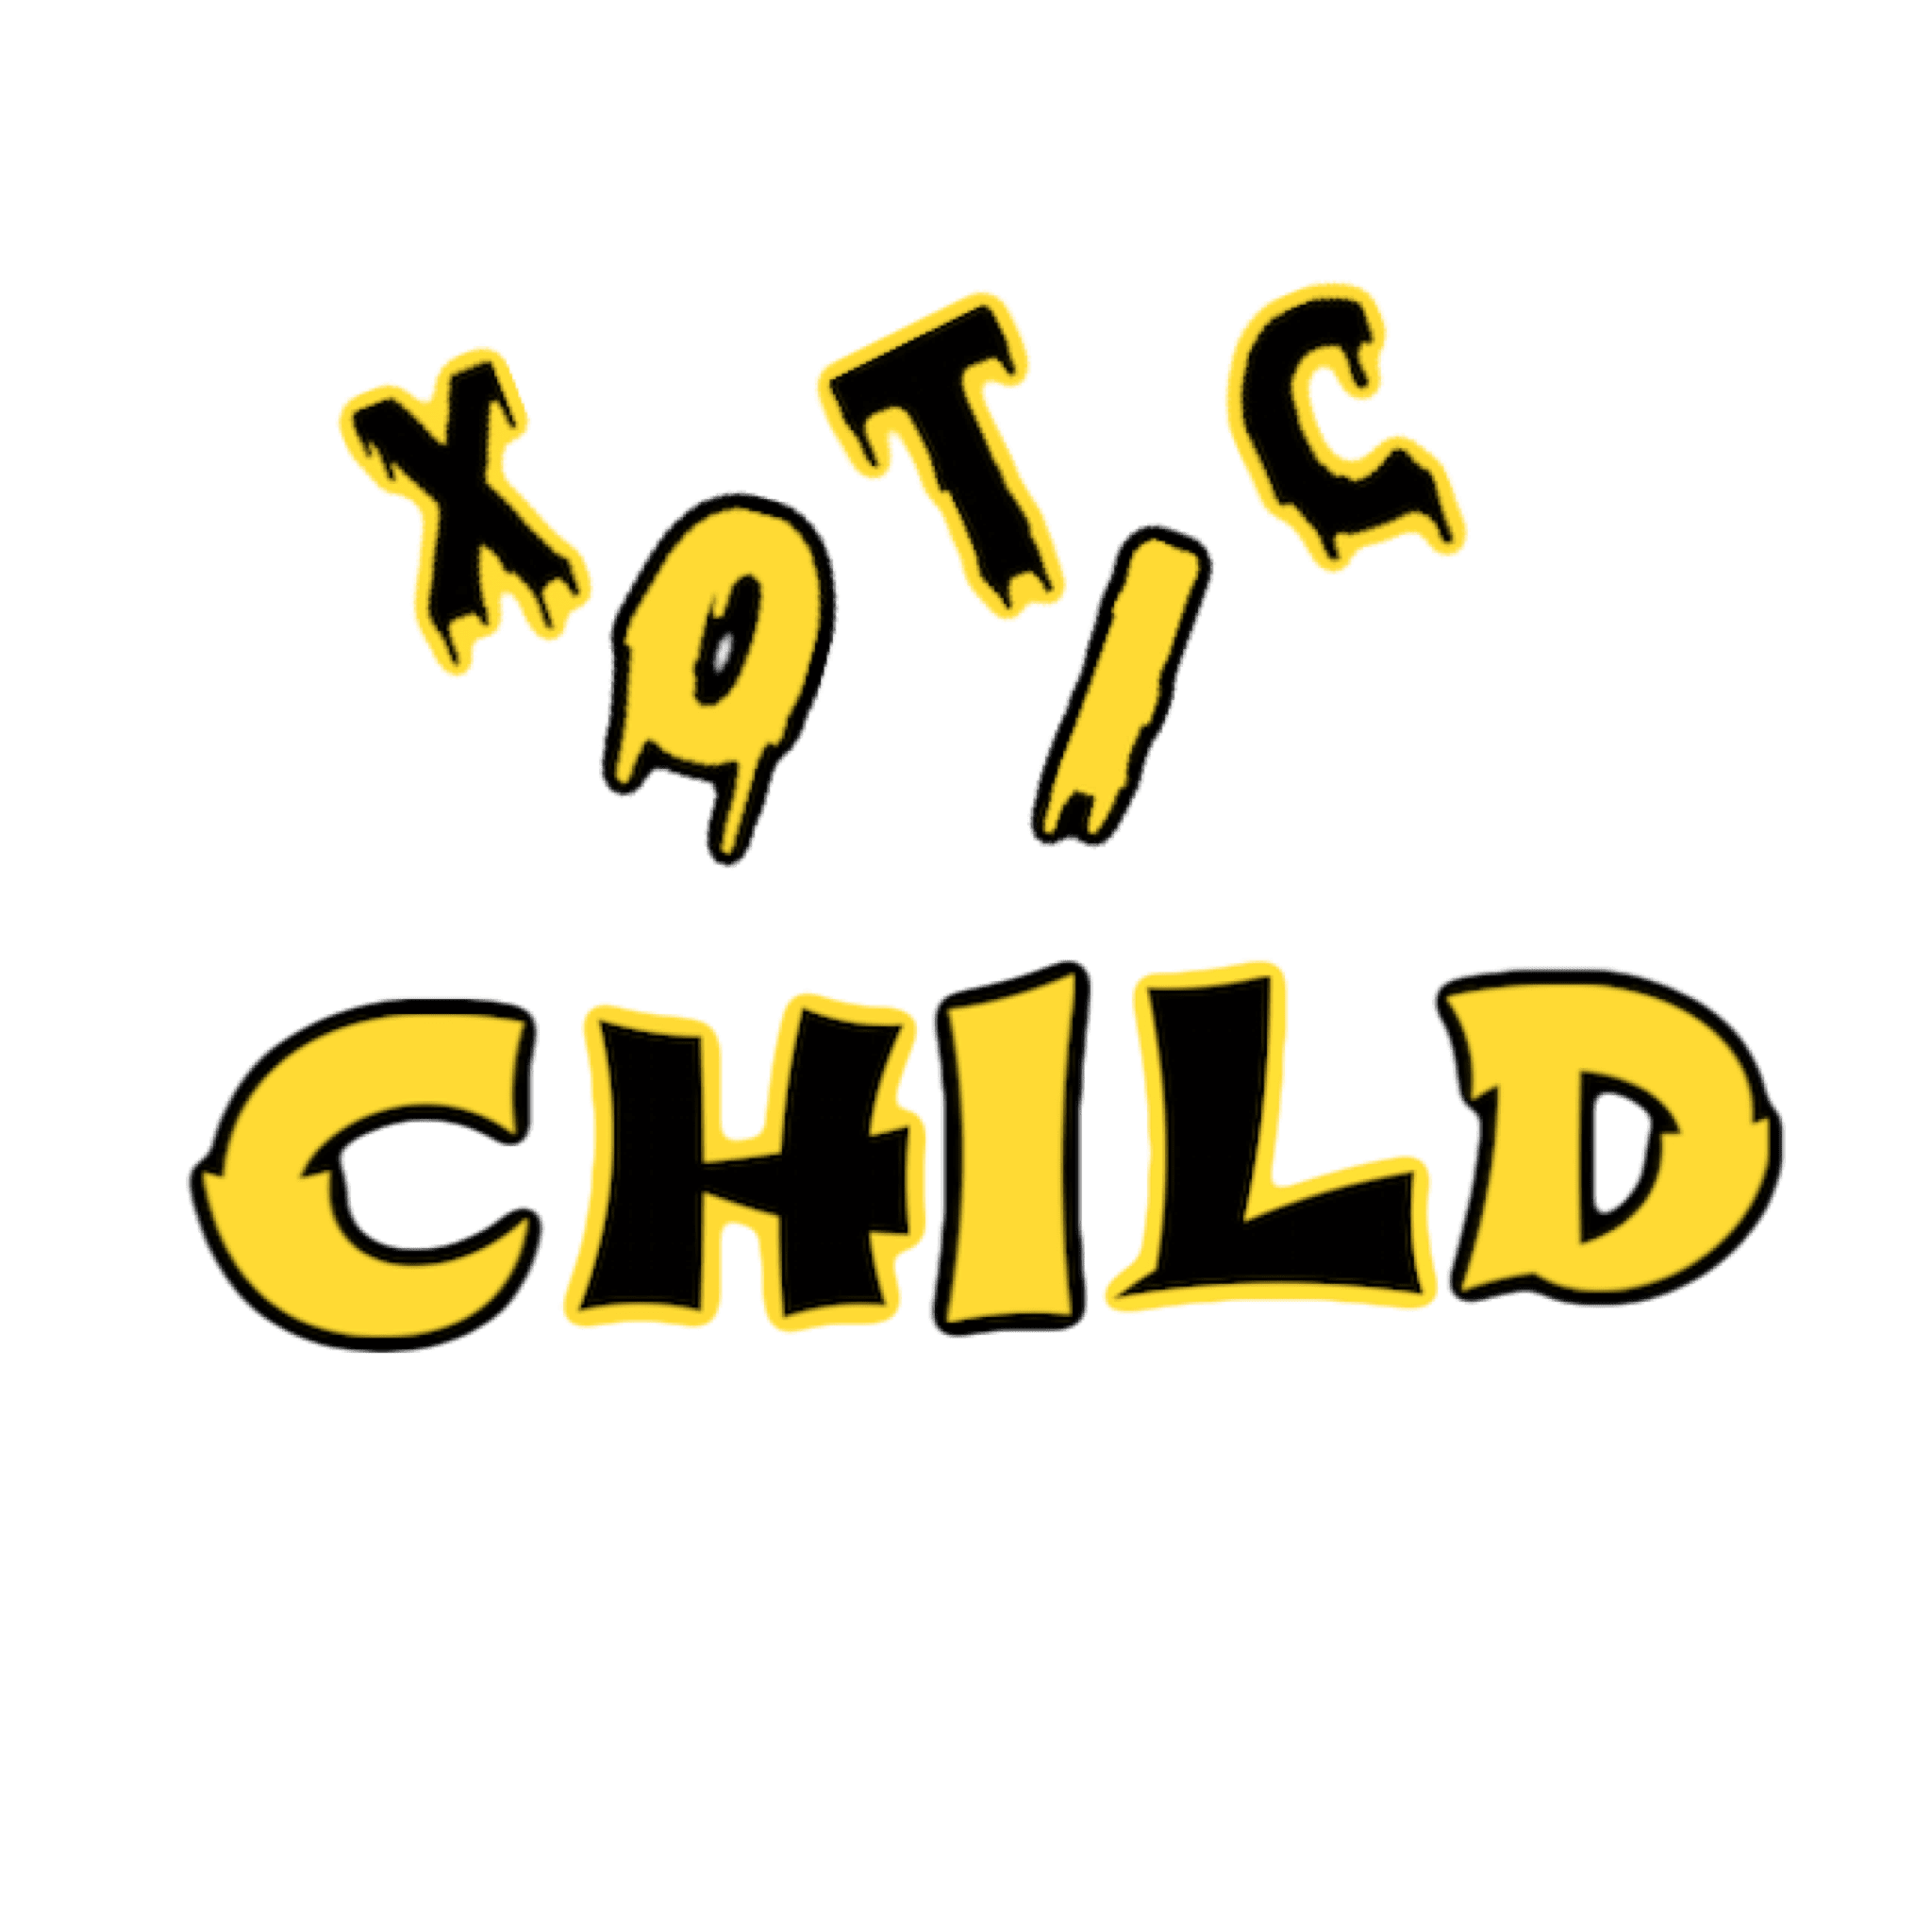 Xotic Child Clothing